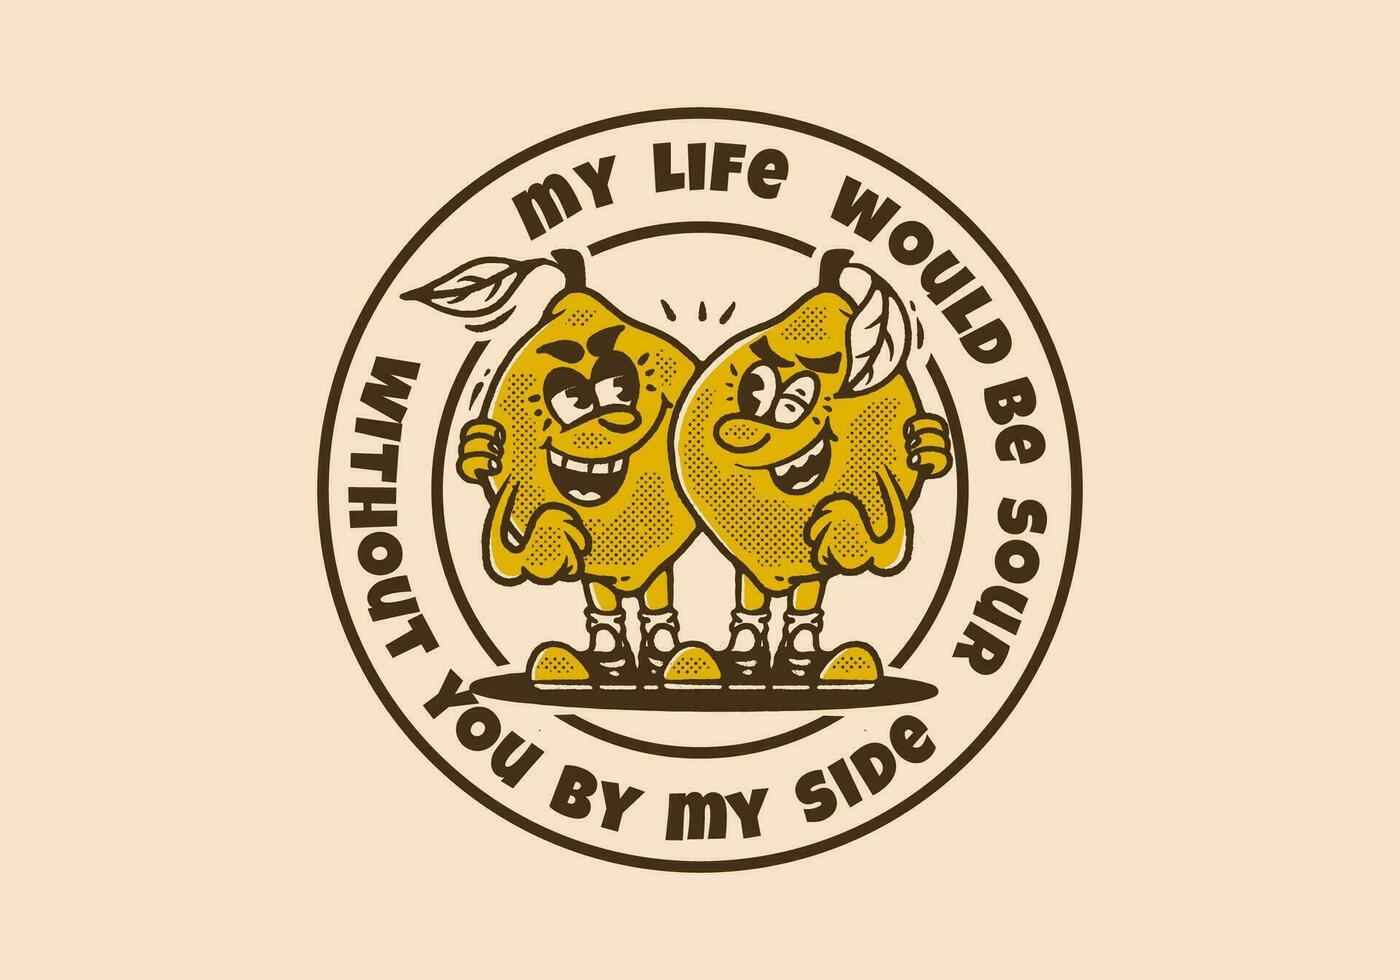 mon la vie aurait être acide sans pour autant vous par mon côté, deux citrons mascotte personnage illustration dans ancien style vecteur